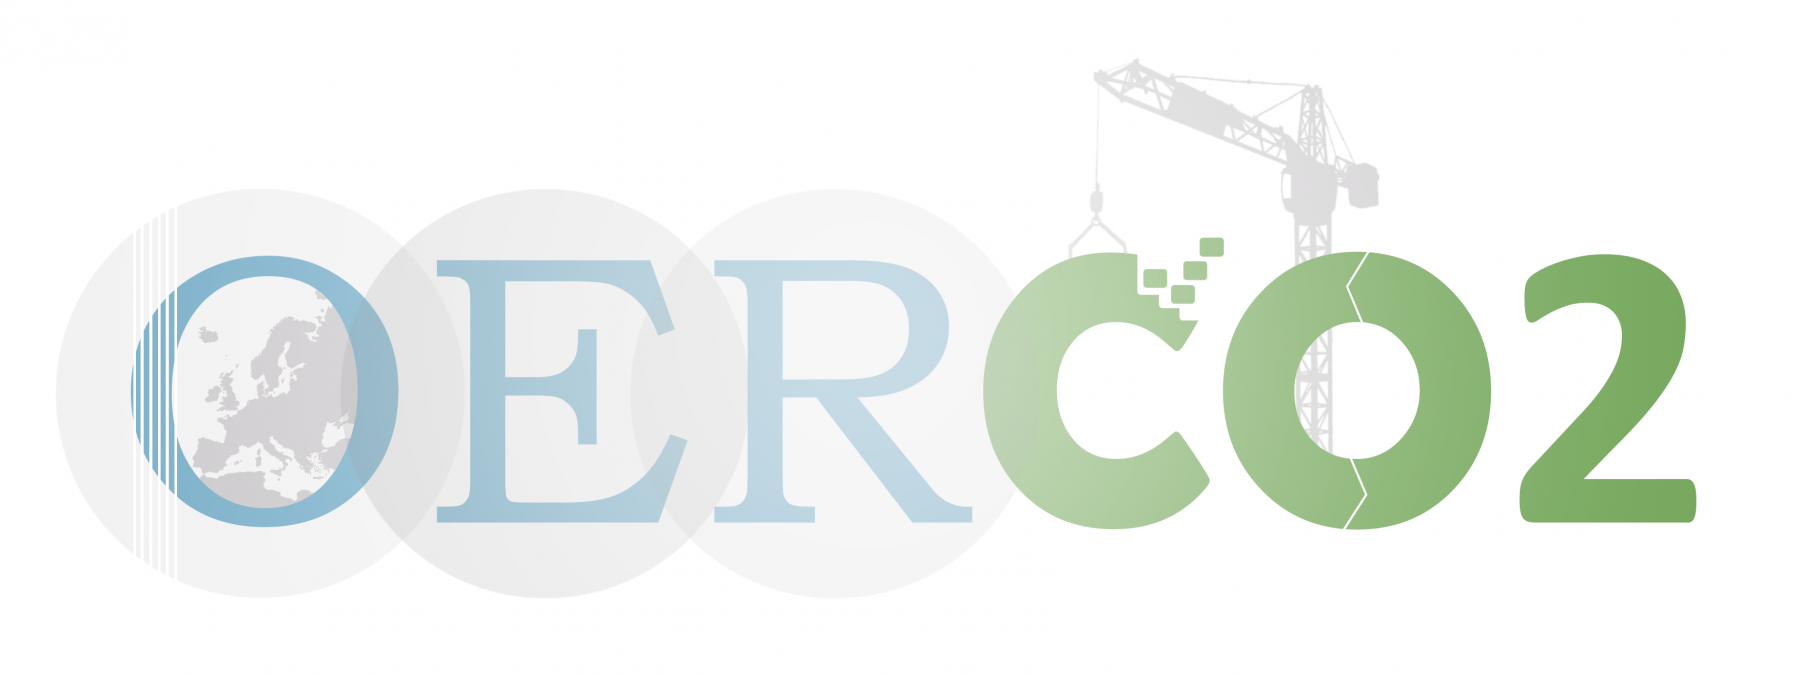 OERCO2 - Recursos educativos online para o estudo inovador do ciclo de vida de materiais de construção